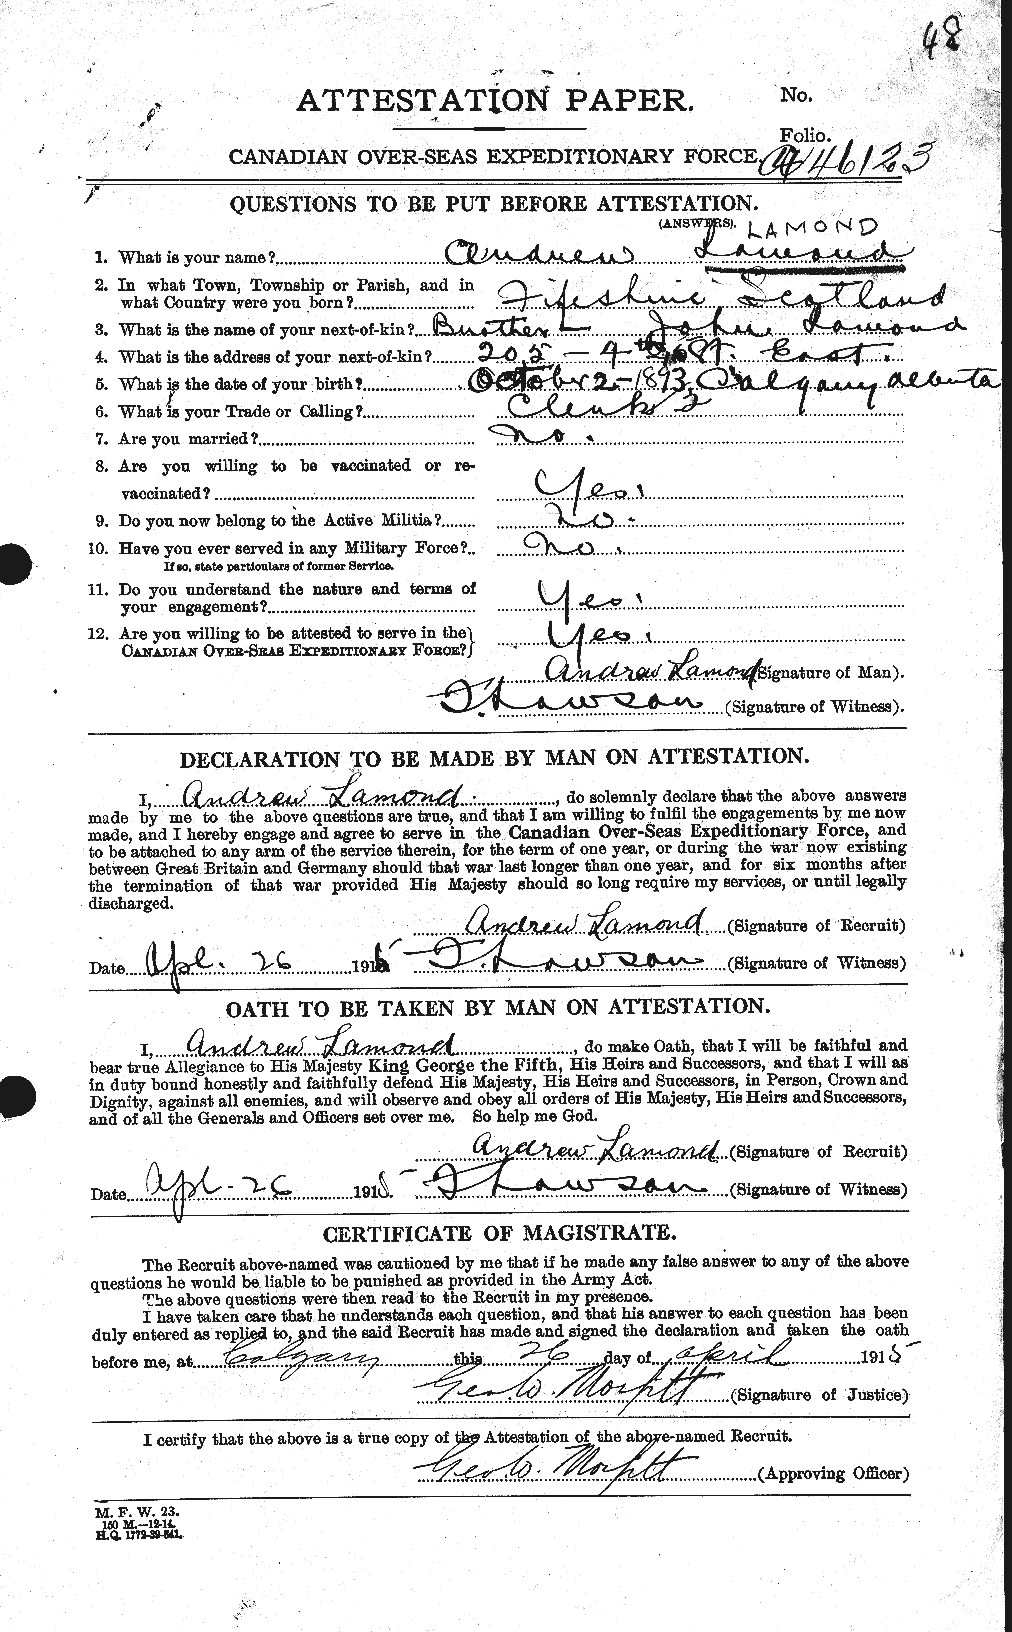 Dossiers du Personnel de la Première Guerre mondiale - CEC 446073a